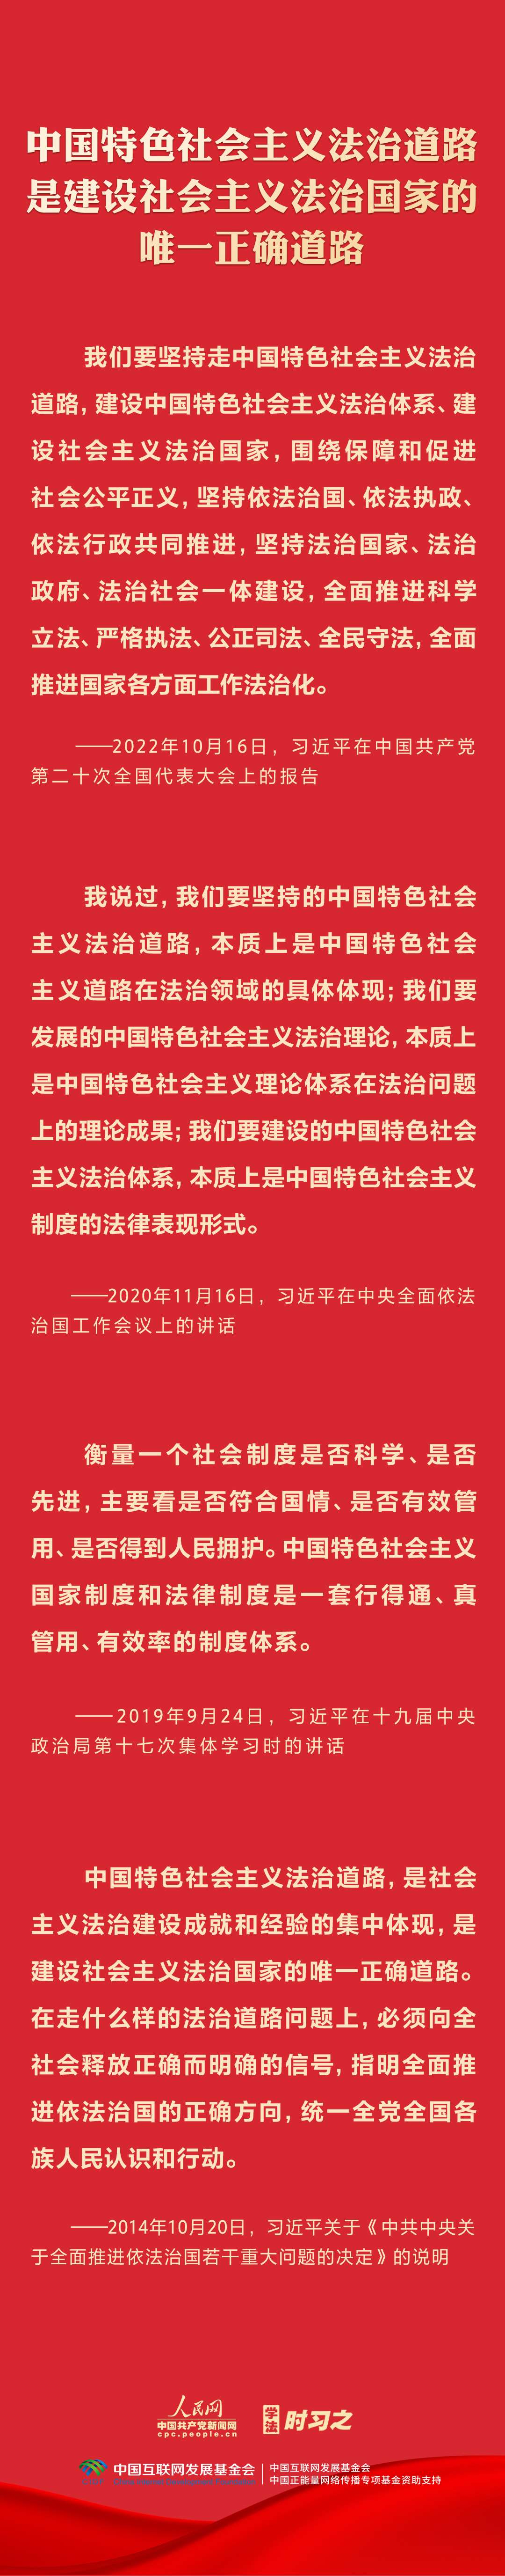 坚持中国特色社会主义法治道路1.jpg